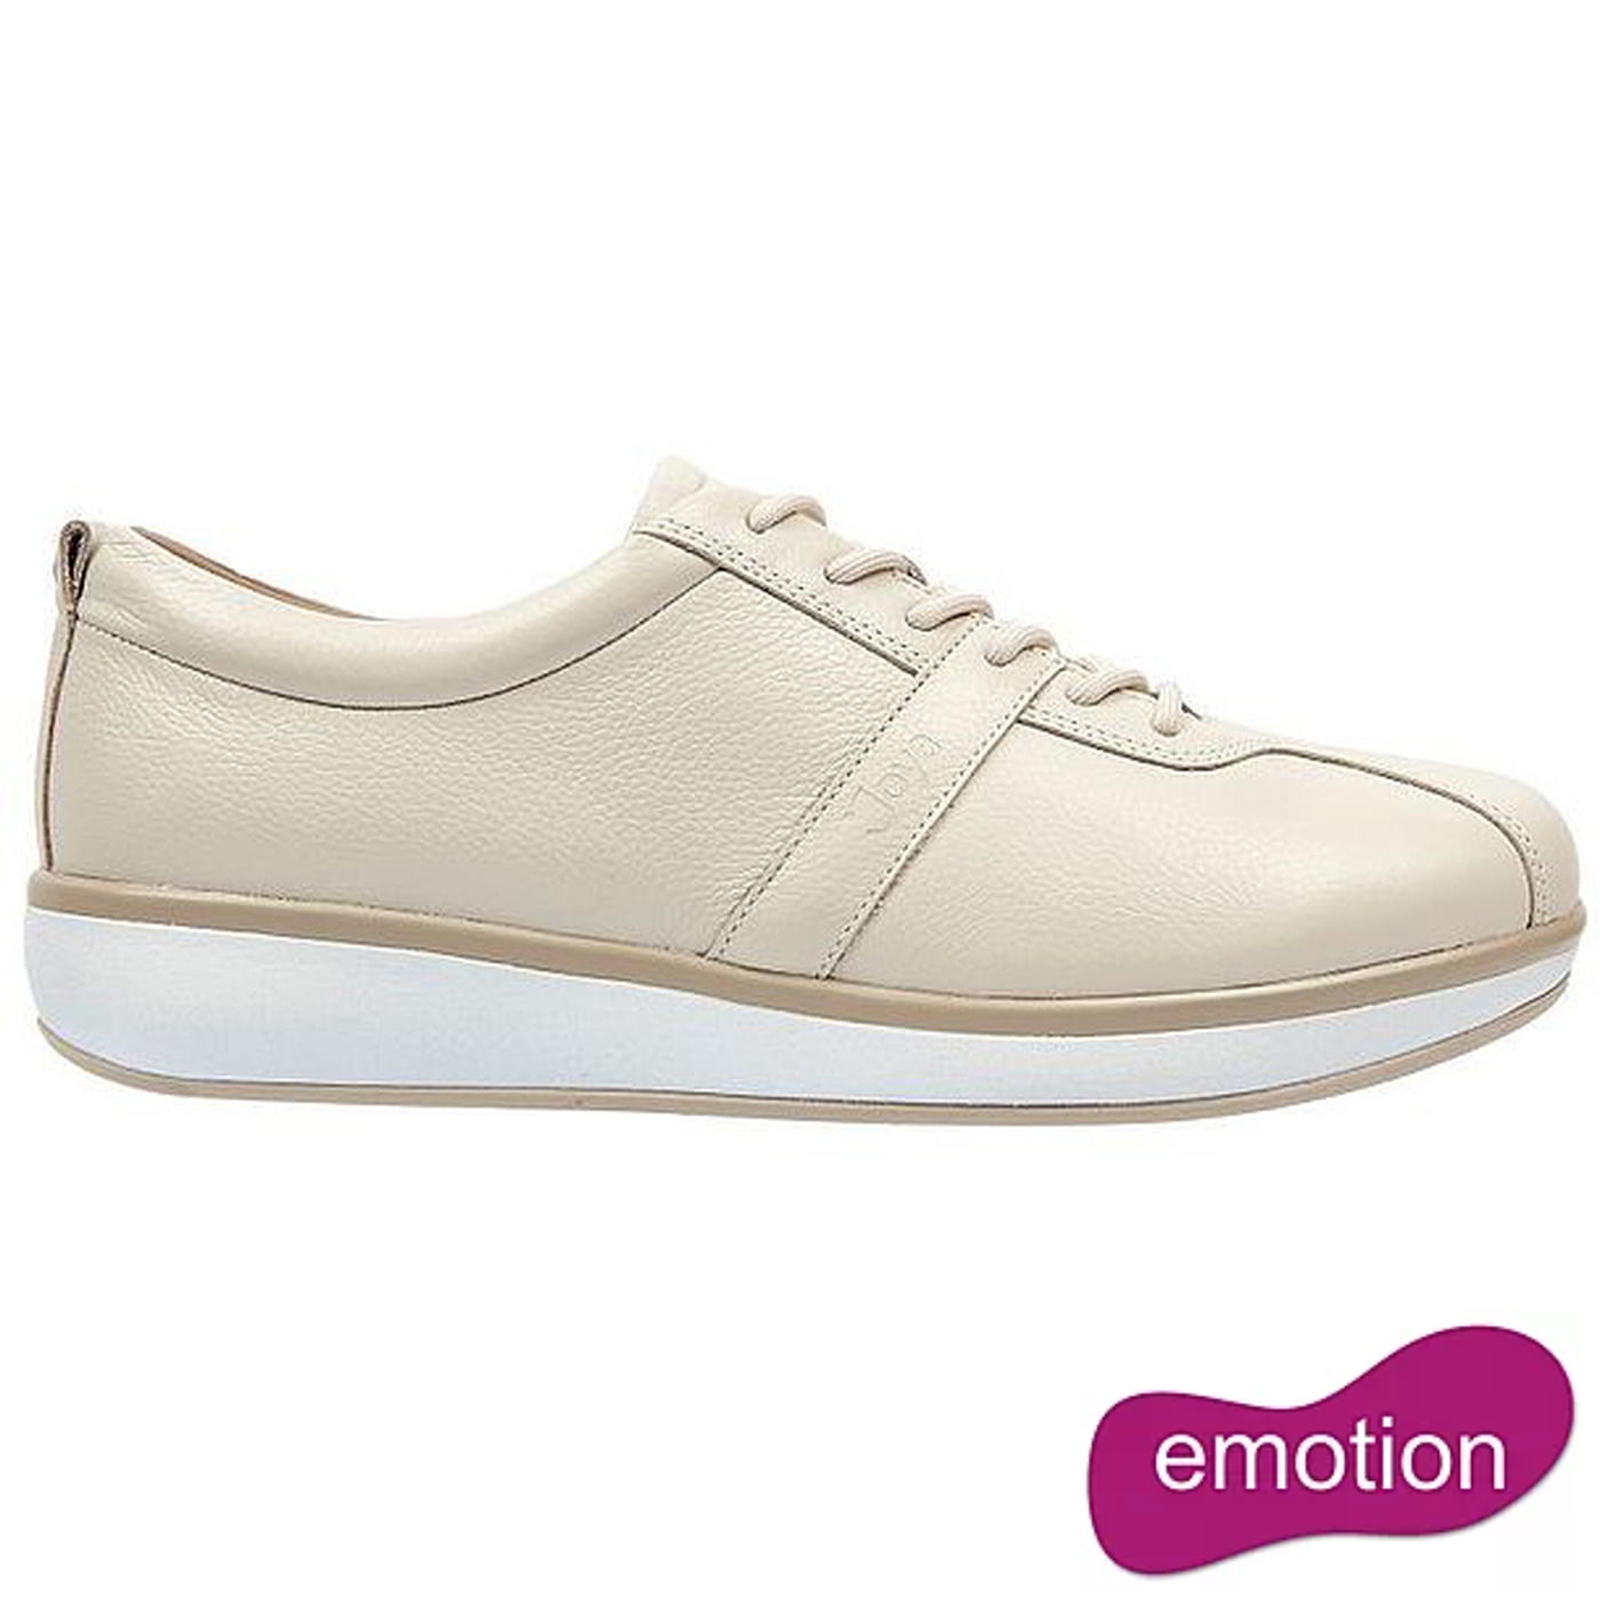 Joya Women's Emma Emotion Leather Lace Up Shoes - Cream